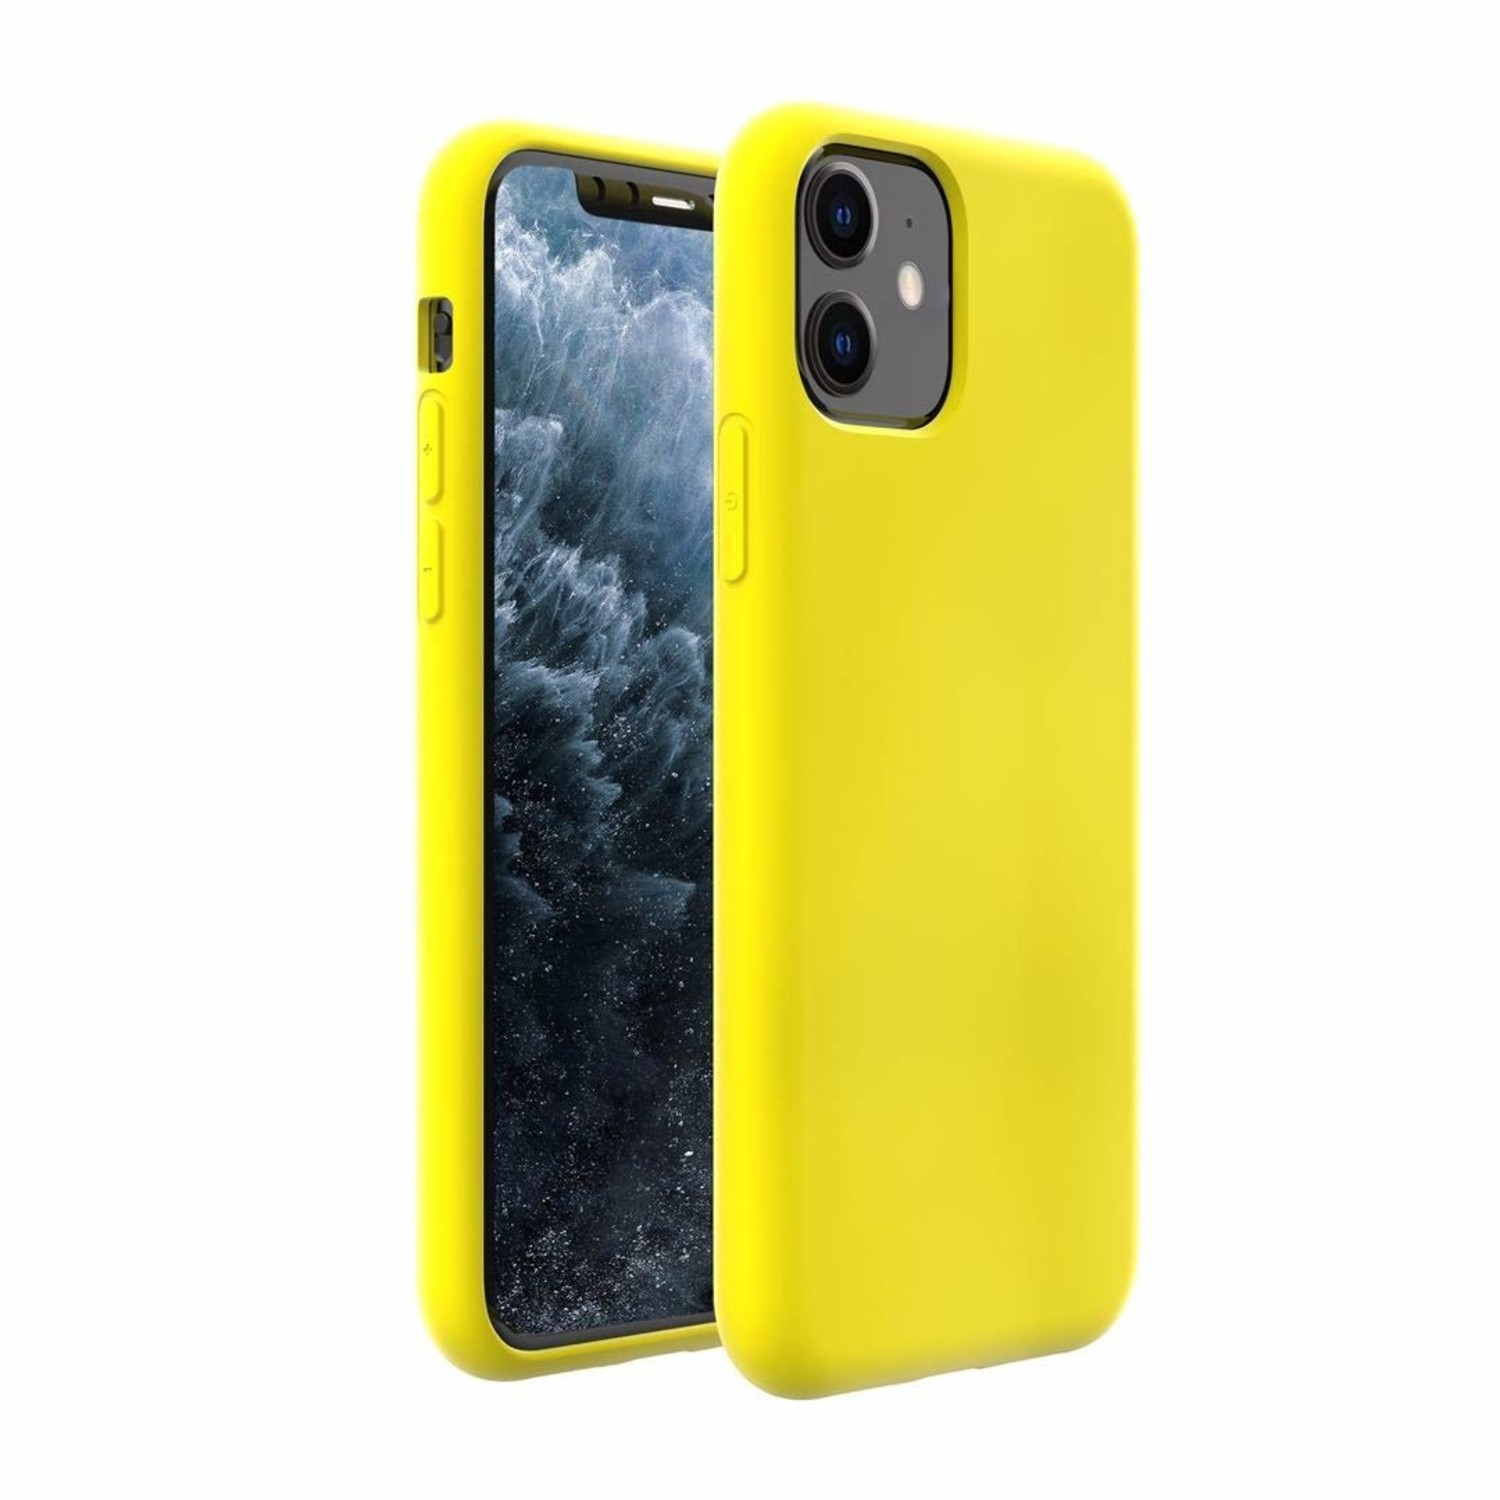 jam Sluimeren gat Silicone case iPhone 11 (geel) - Phone-Factory